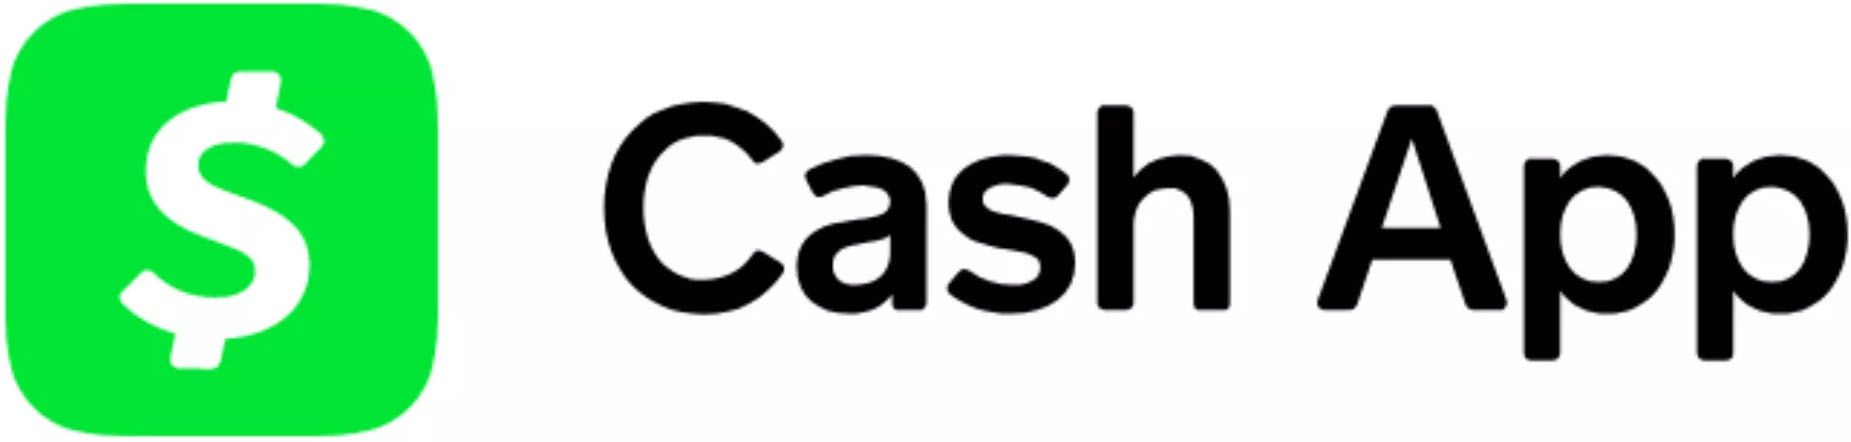 cash app plus plus features